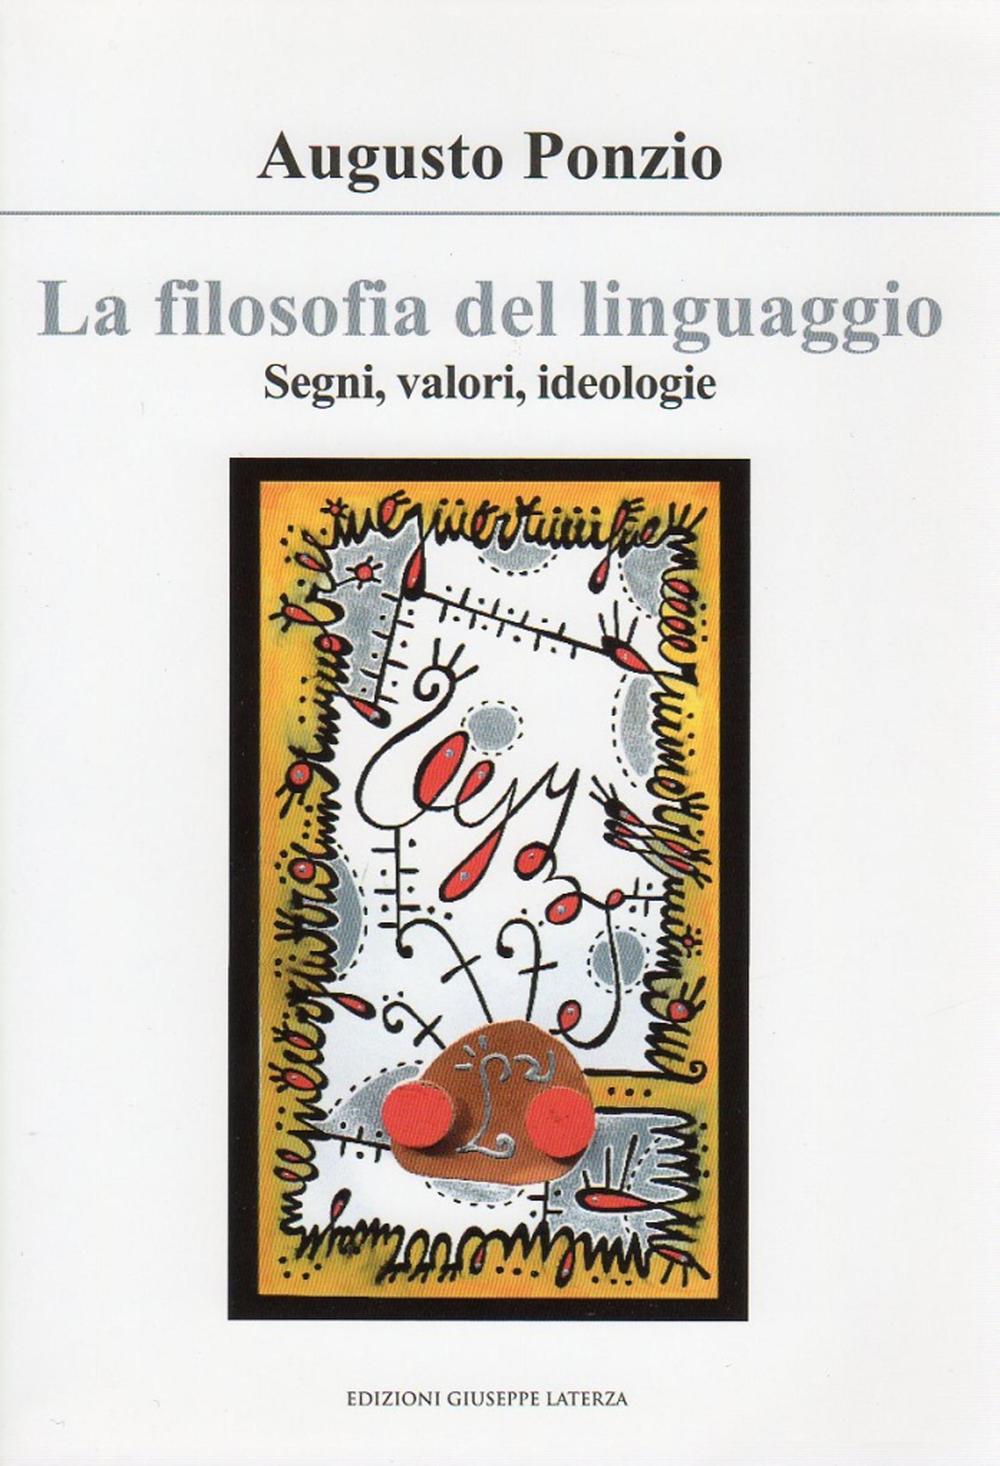 Libri Ponzio Augusto - La Filosofia Del Linguaggio. Segni, Valori, Ideologie NUOVO SIGILLATO, EDIZIONE DEL 30/11/2011 SUBITO DISPONIBILE